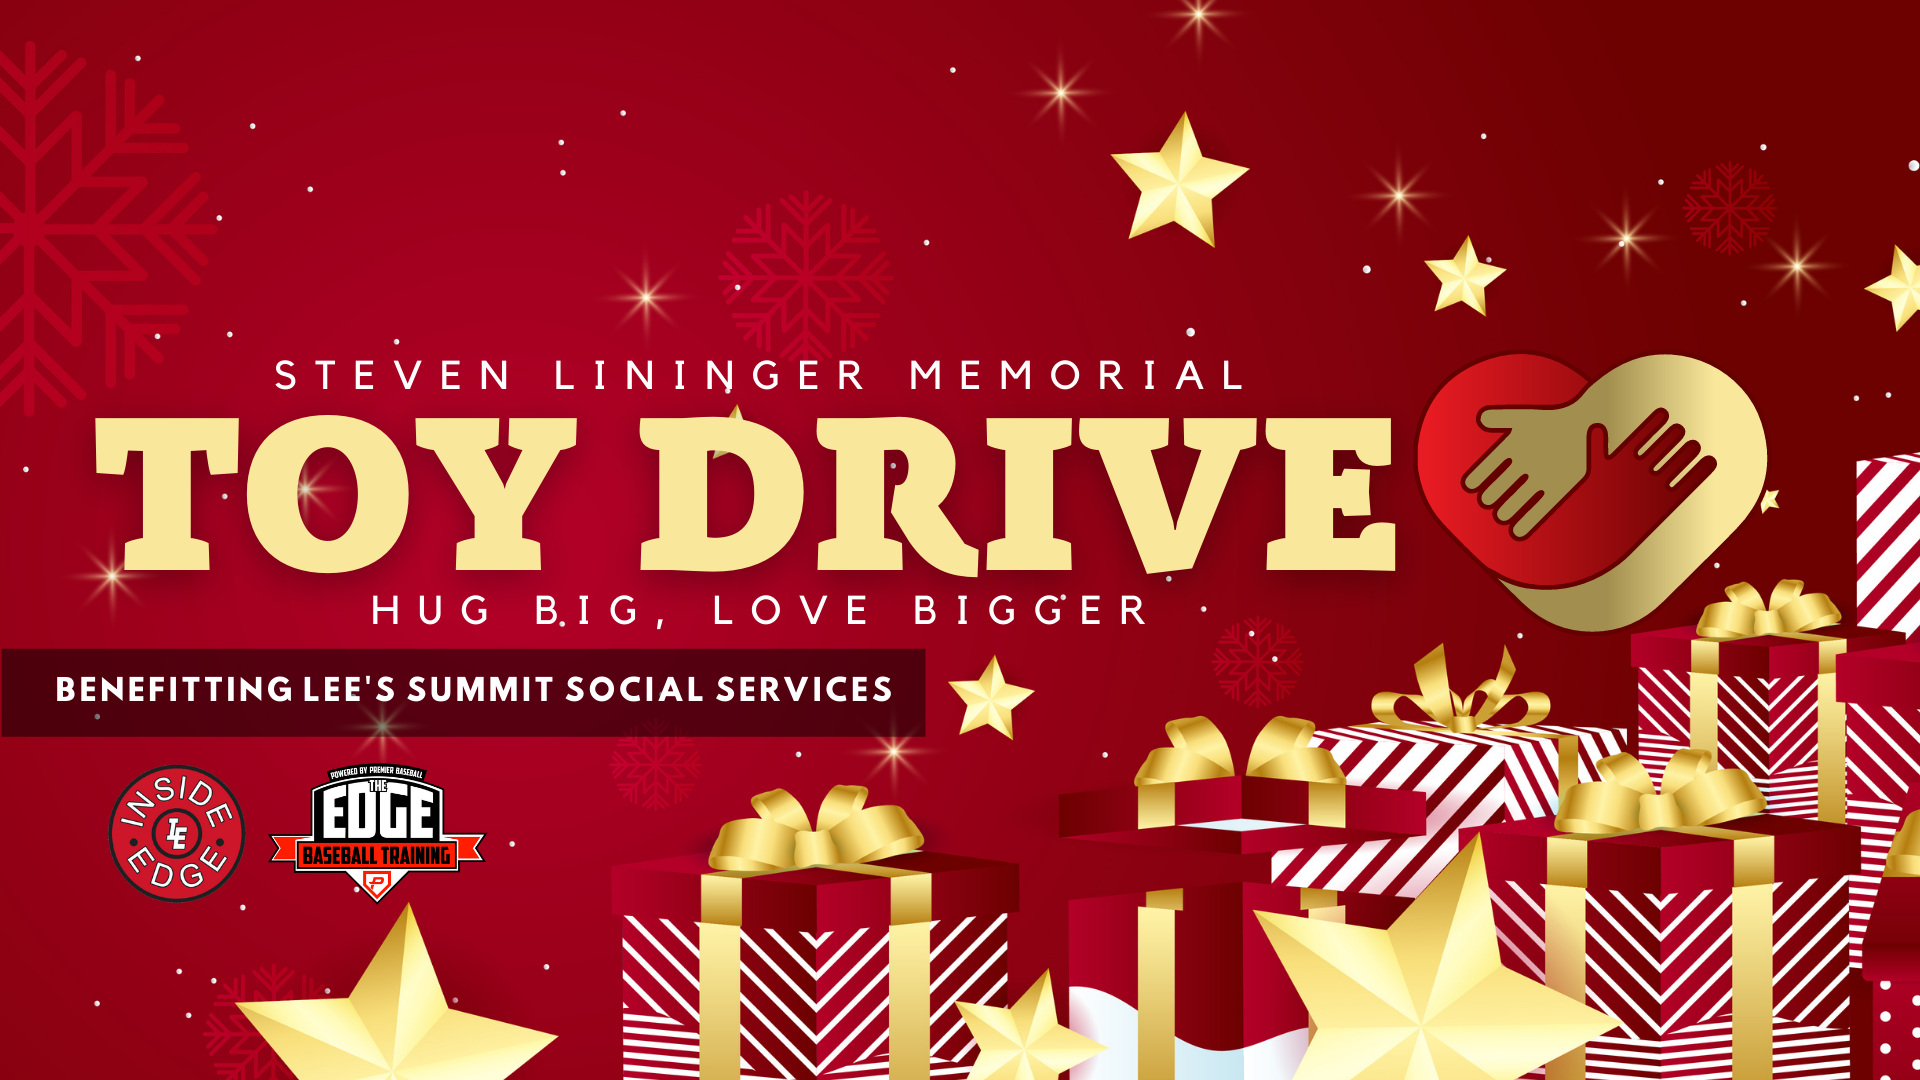 Steven Lininger Memorial Toy Drive December 2021